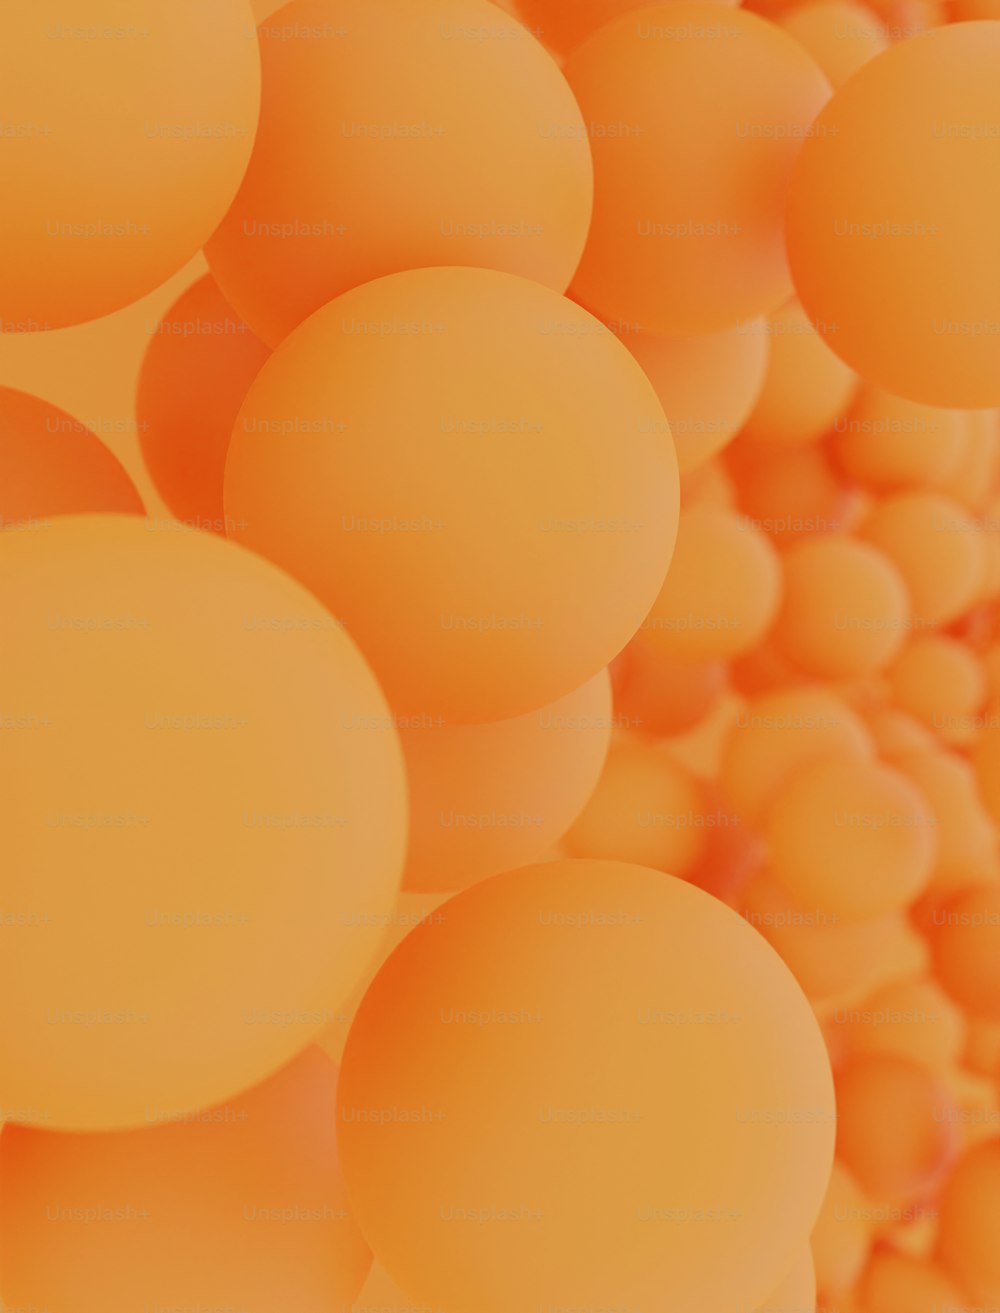 空中に浮かぶオレンジ色のボールの束